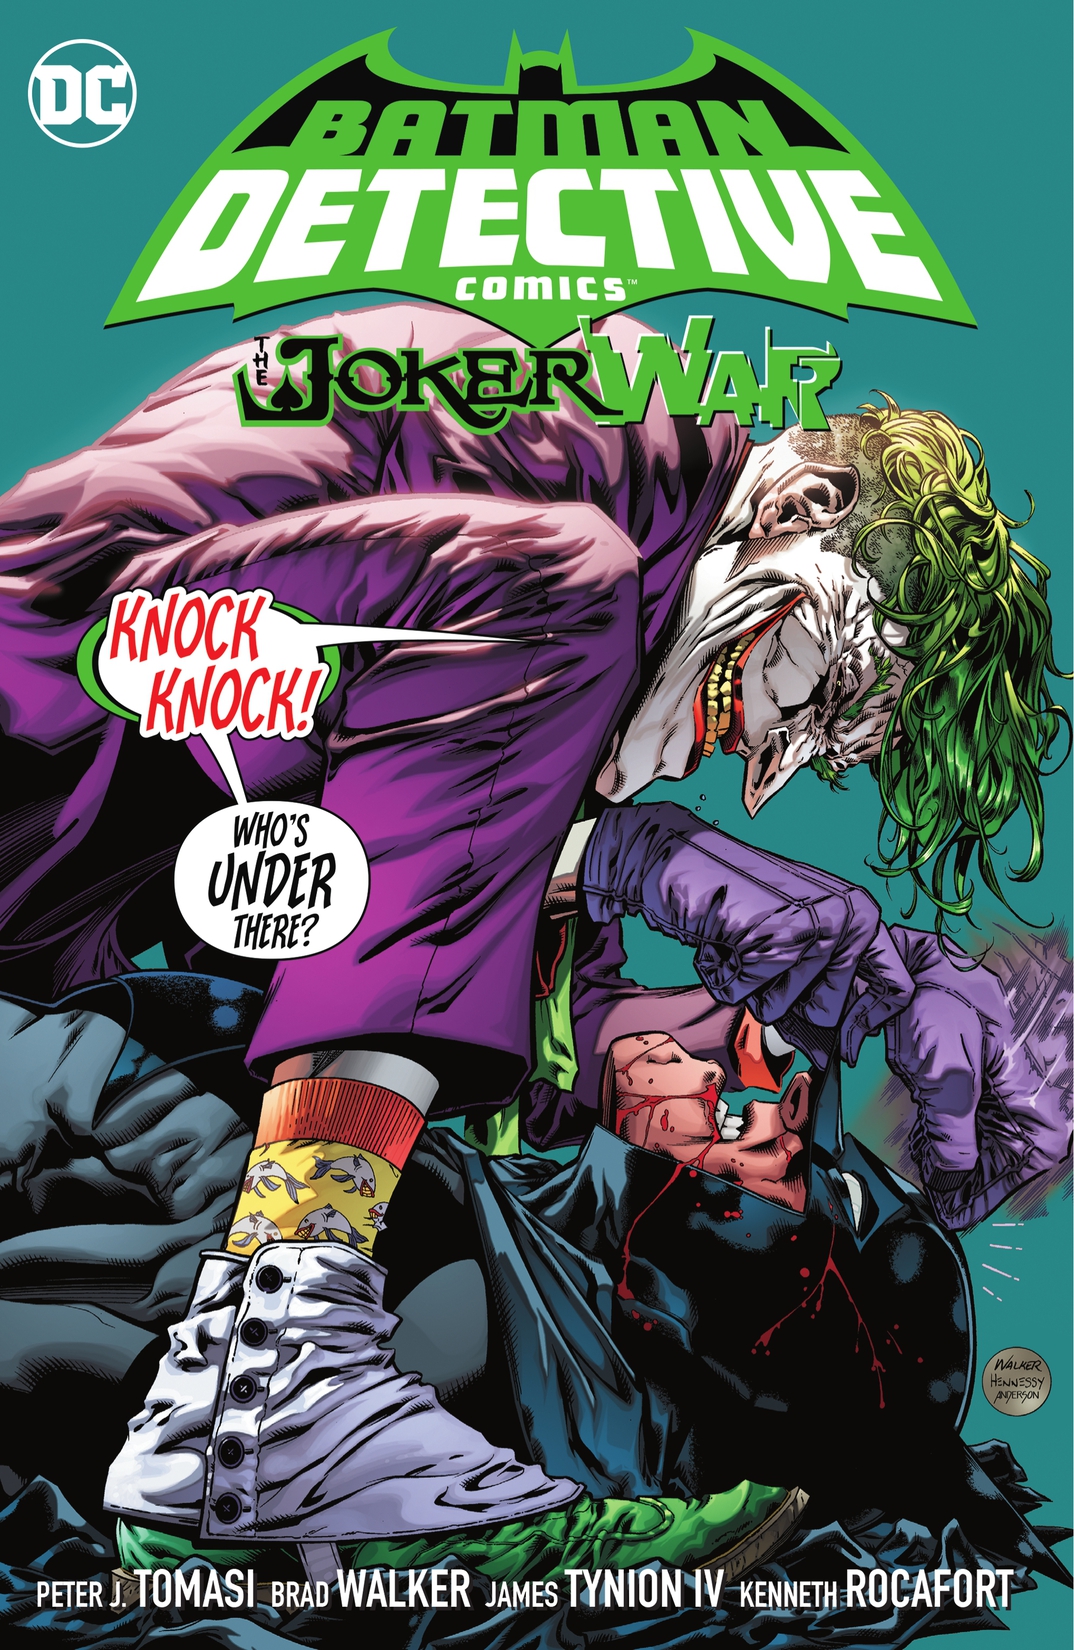 Batman: Detective Comics Vol. 5: The Joker War preview images